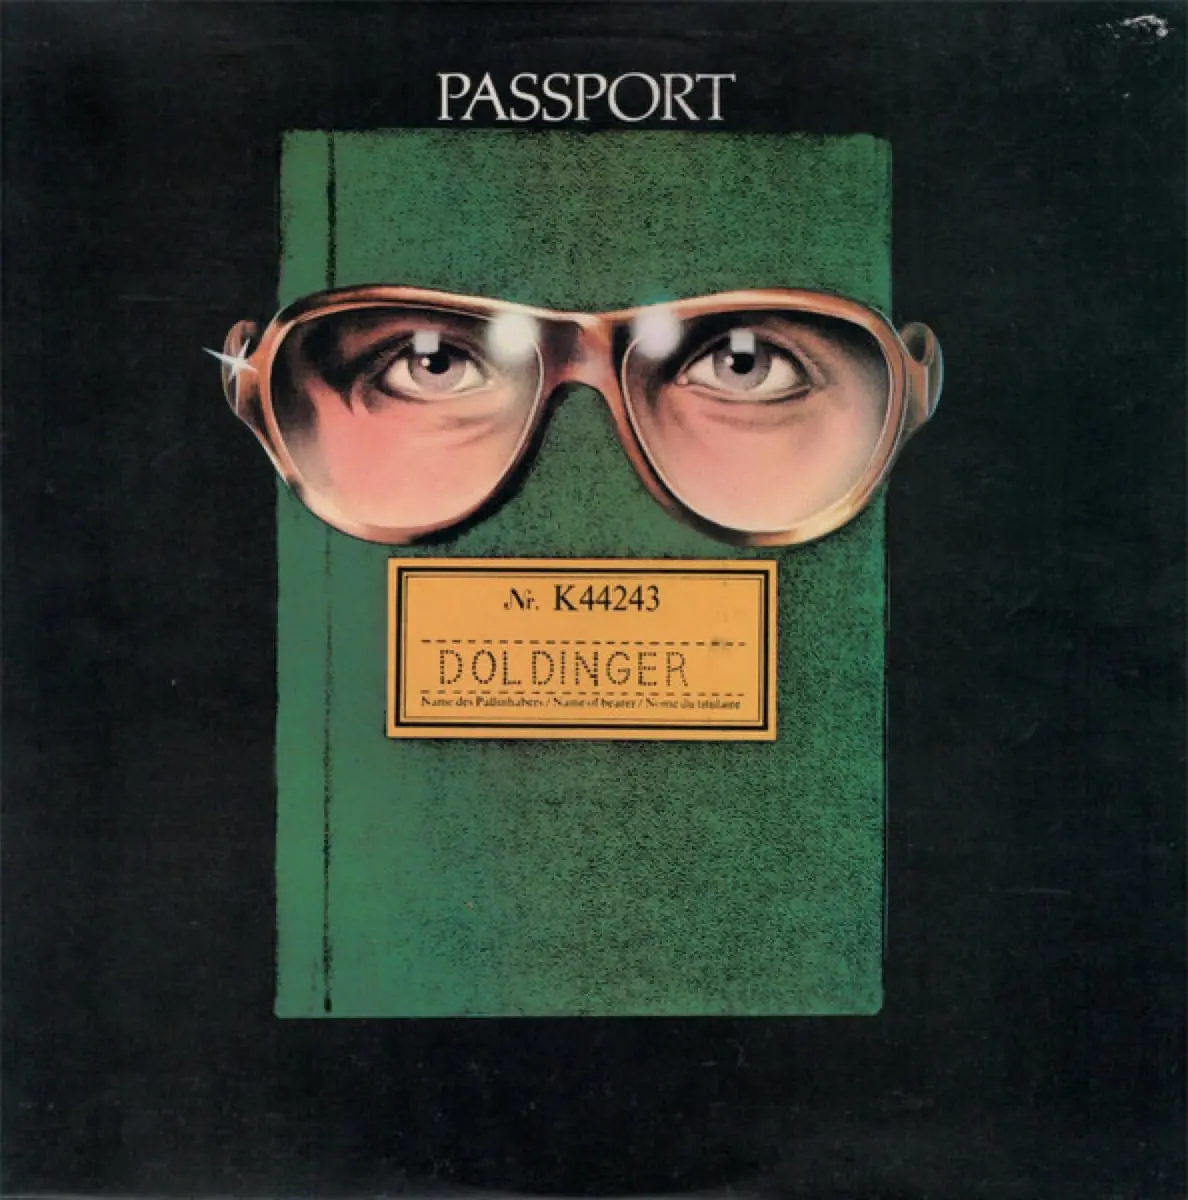 JJ 11/73: Passport – Passport